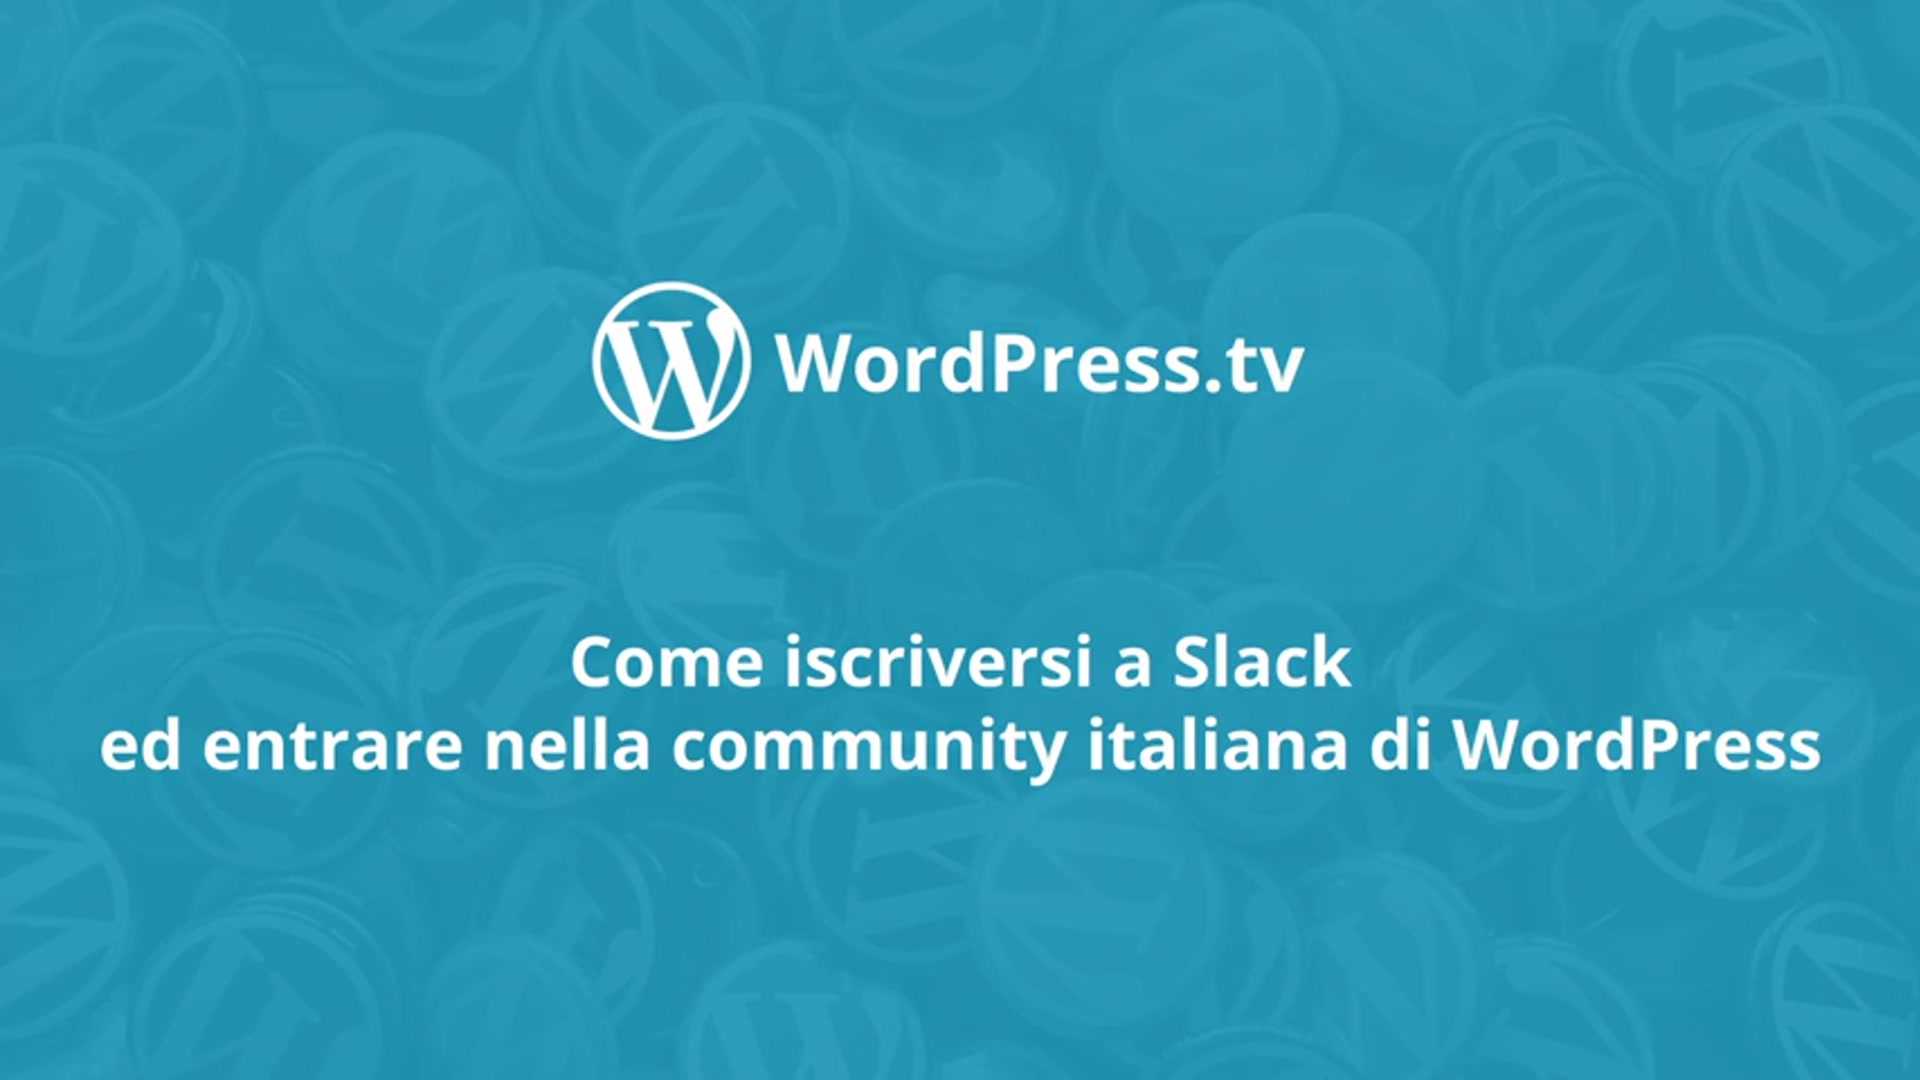 Come iscriversi a Slack ed entrare nella community italiana di WordPress